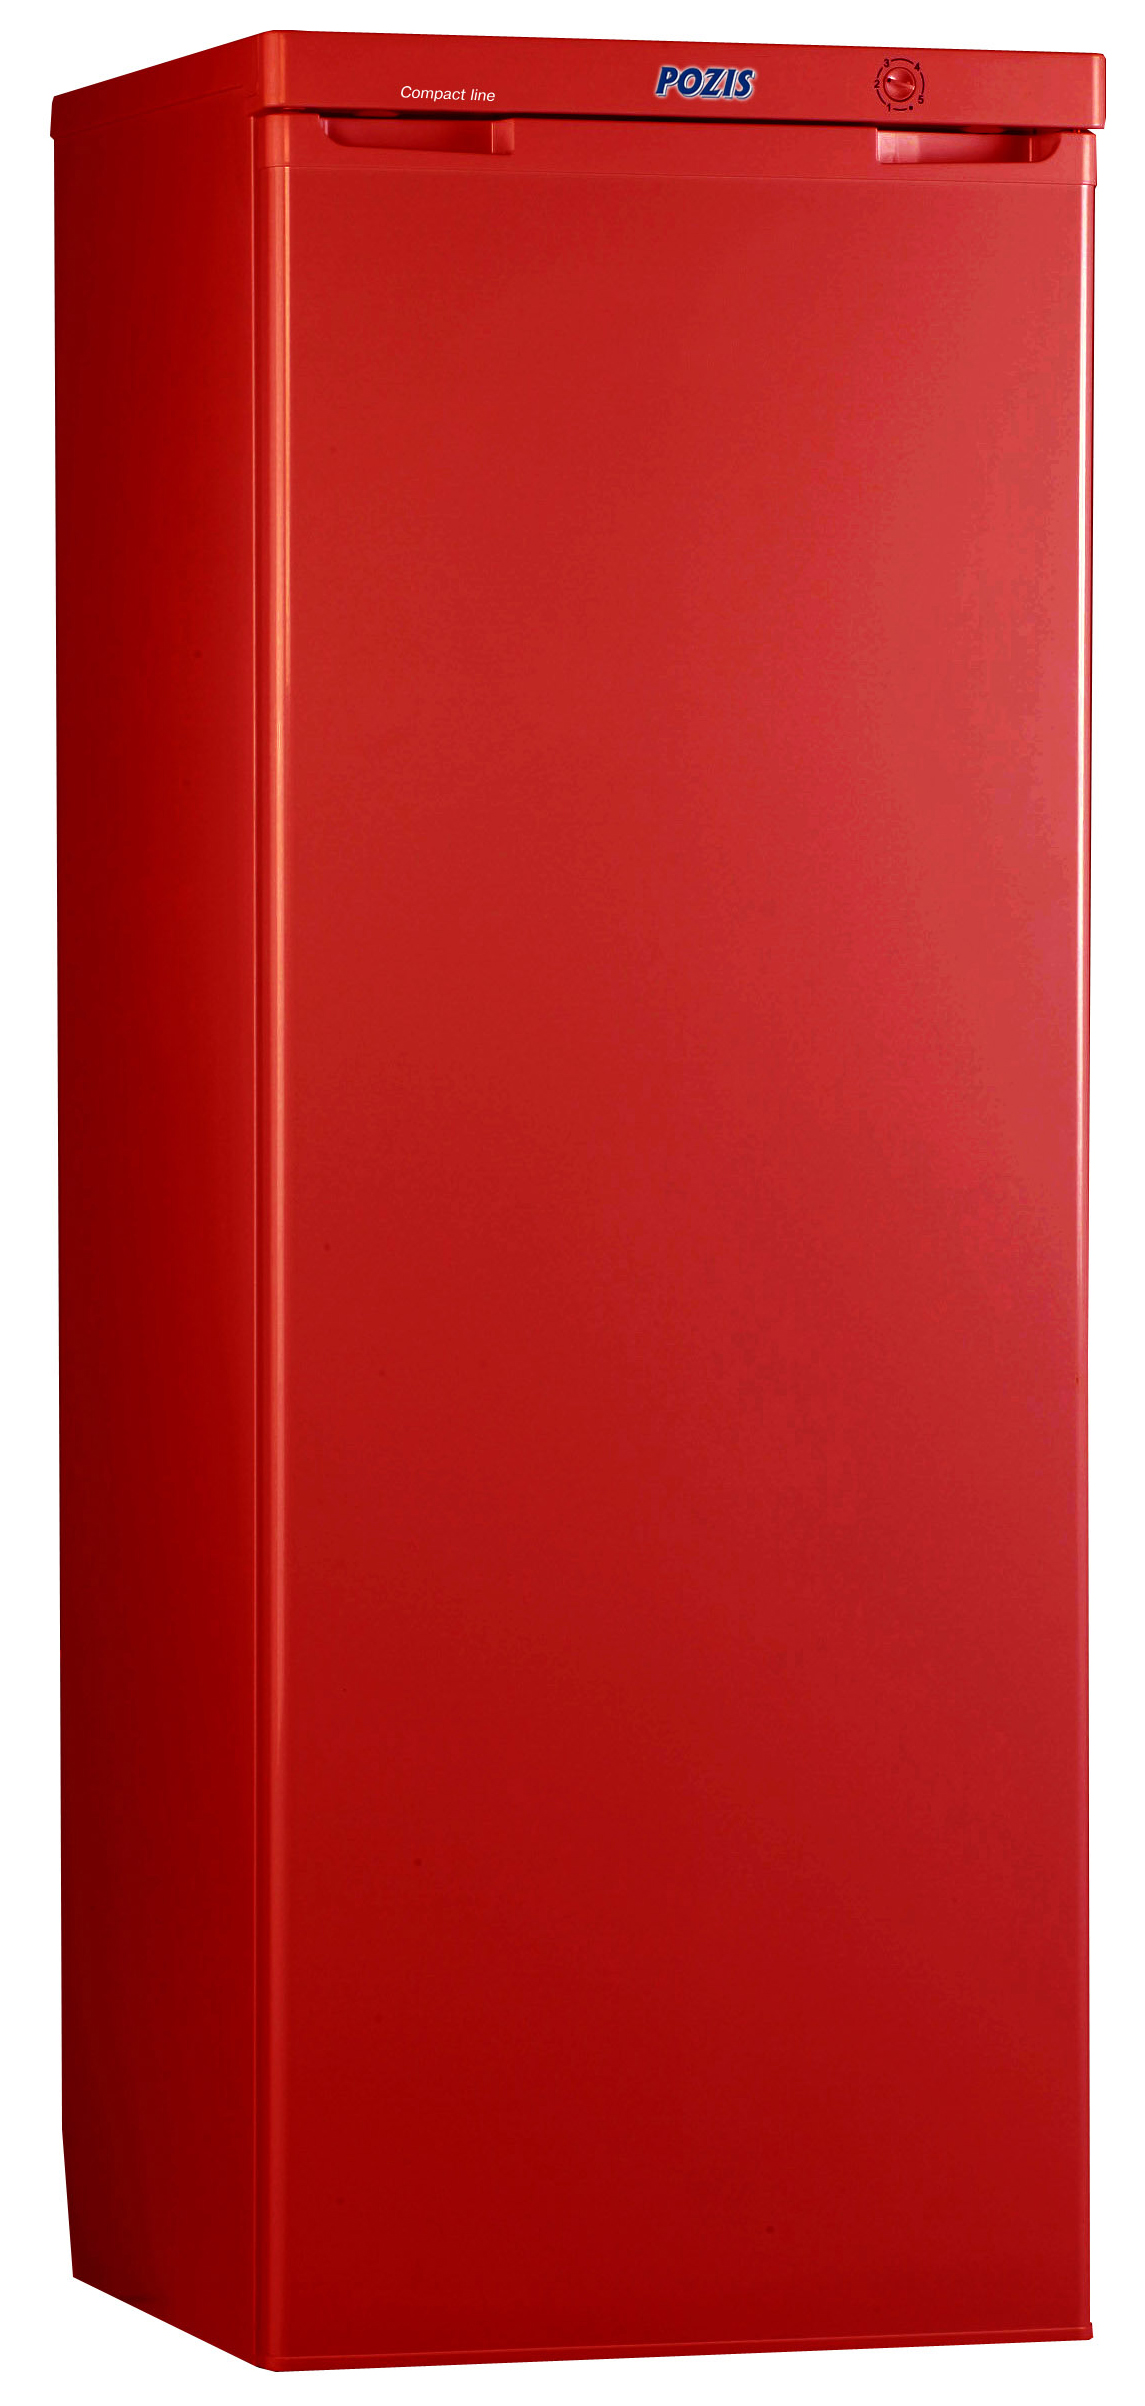 Холодильник POZIS RS-416 красный детские соски свежие продукты питания nibbler baby pacifiers feeder дети фрукты кормления сосок безопасные поставки соска соски соски pacifier бутылки